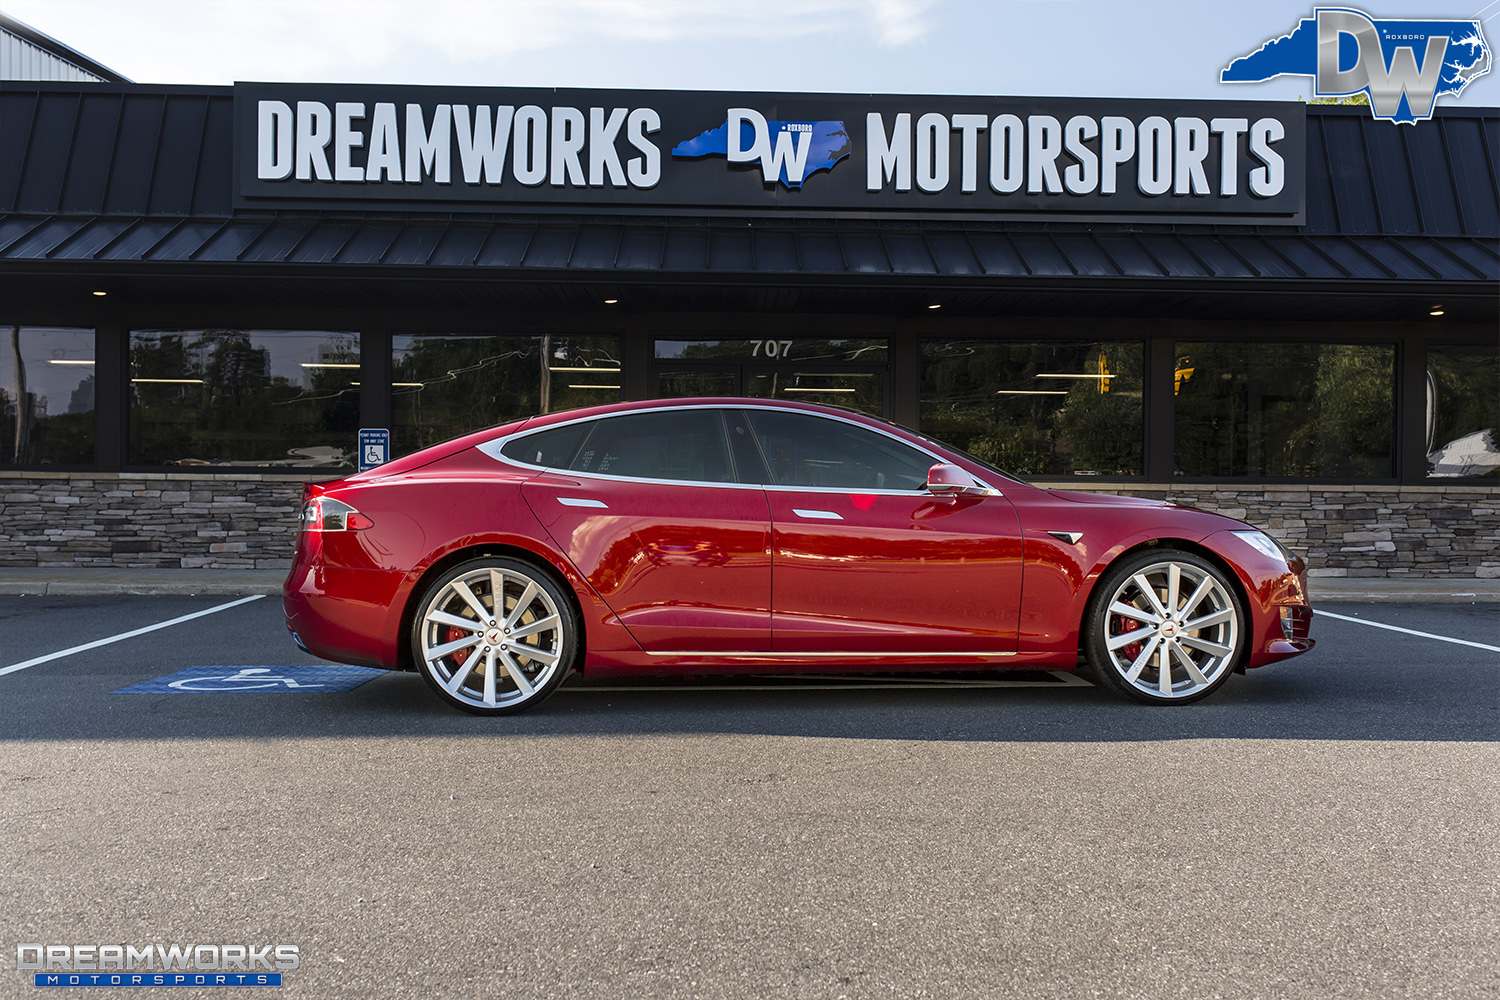 Red-Tesla-Dreamworks-Motorsports-17.jpg